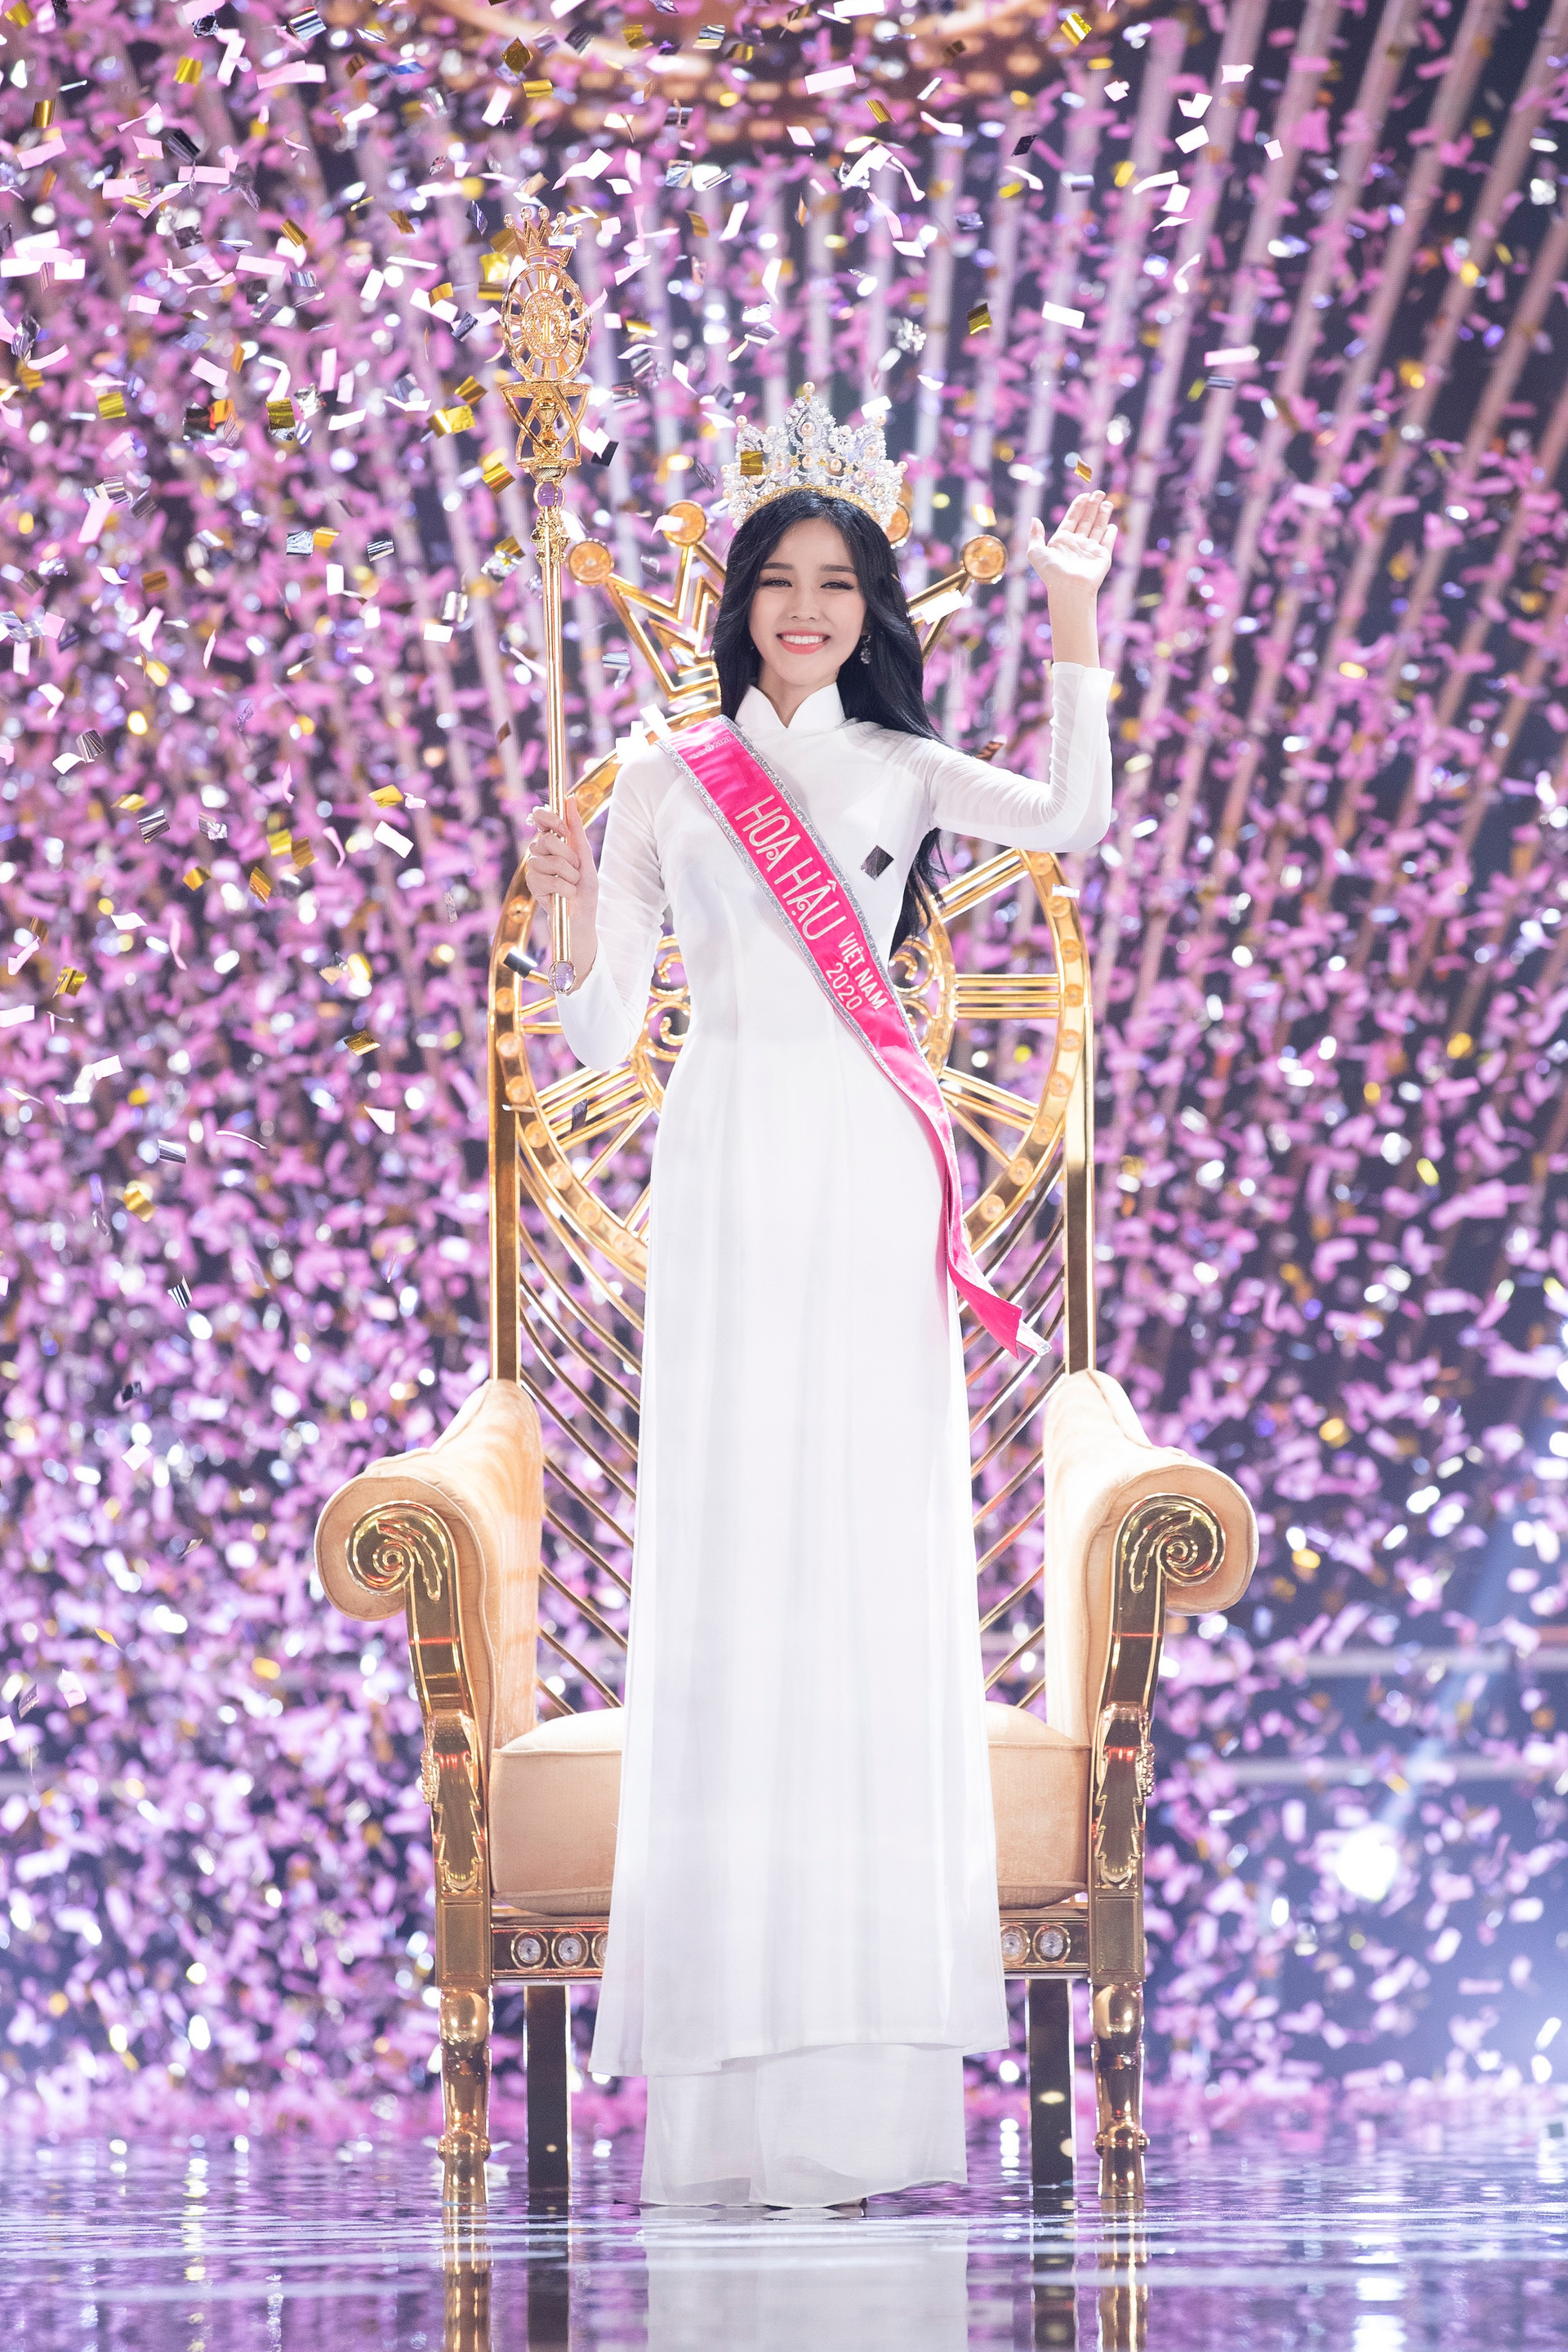 Chứng kiến con gái đăng quang Hoa hậu Việt Nam 2020, bố mẹ Đỗ Thị Hà đã không kìm được nước mắt.